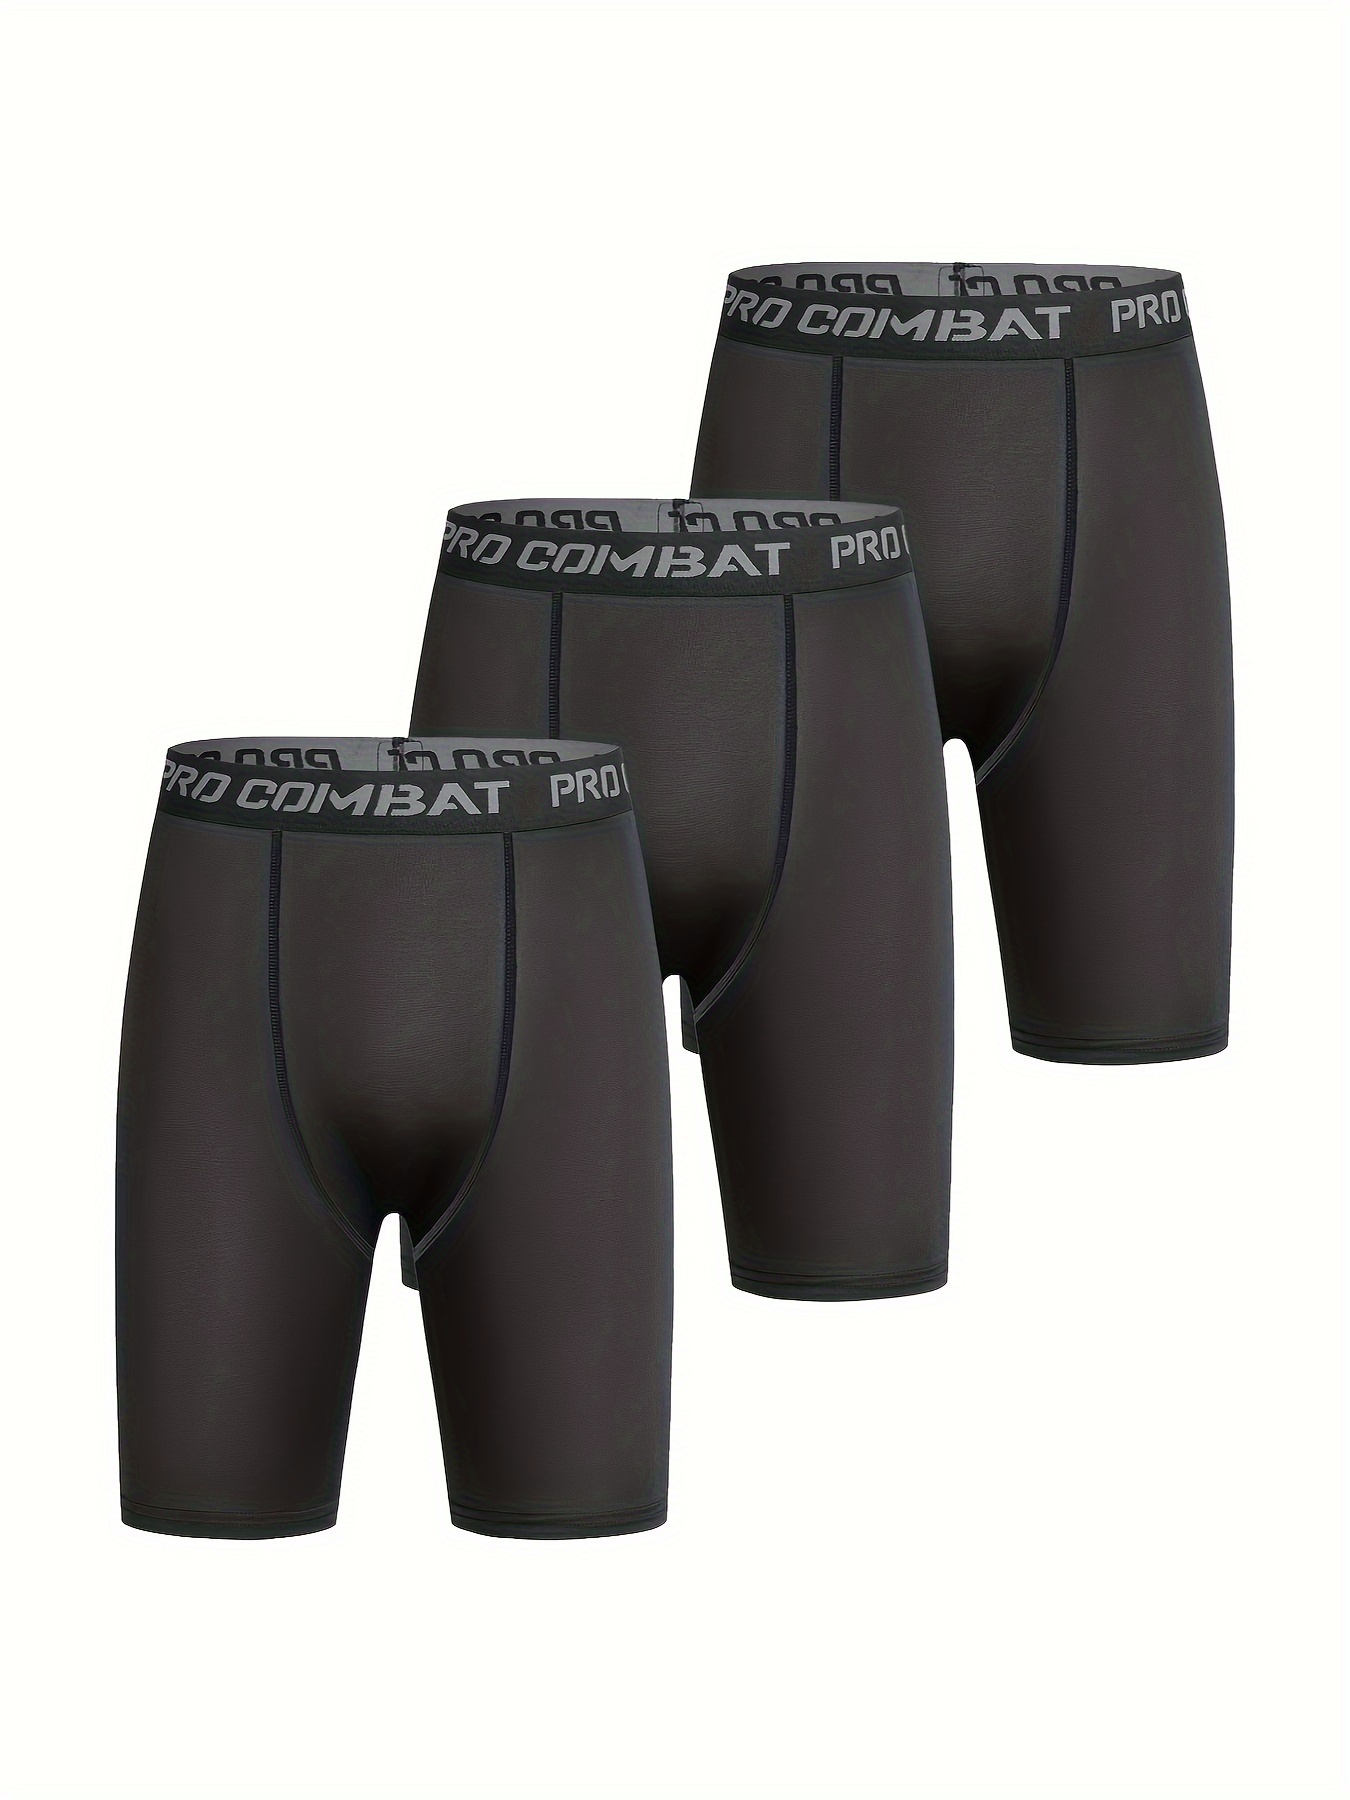 Men's Fun Personality ' CHOKING HAZARD ' Warning Sign Pattern Black High  Stretch Boxer Briefs Underwear